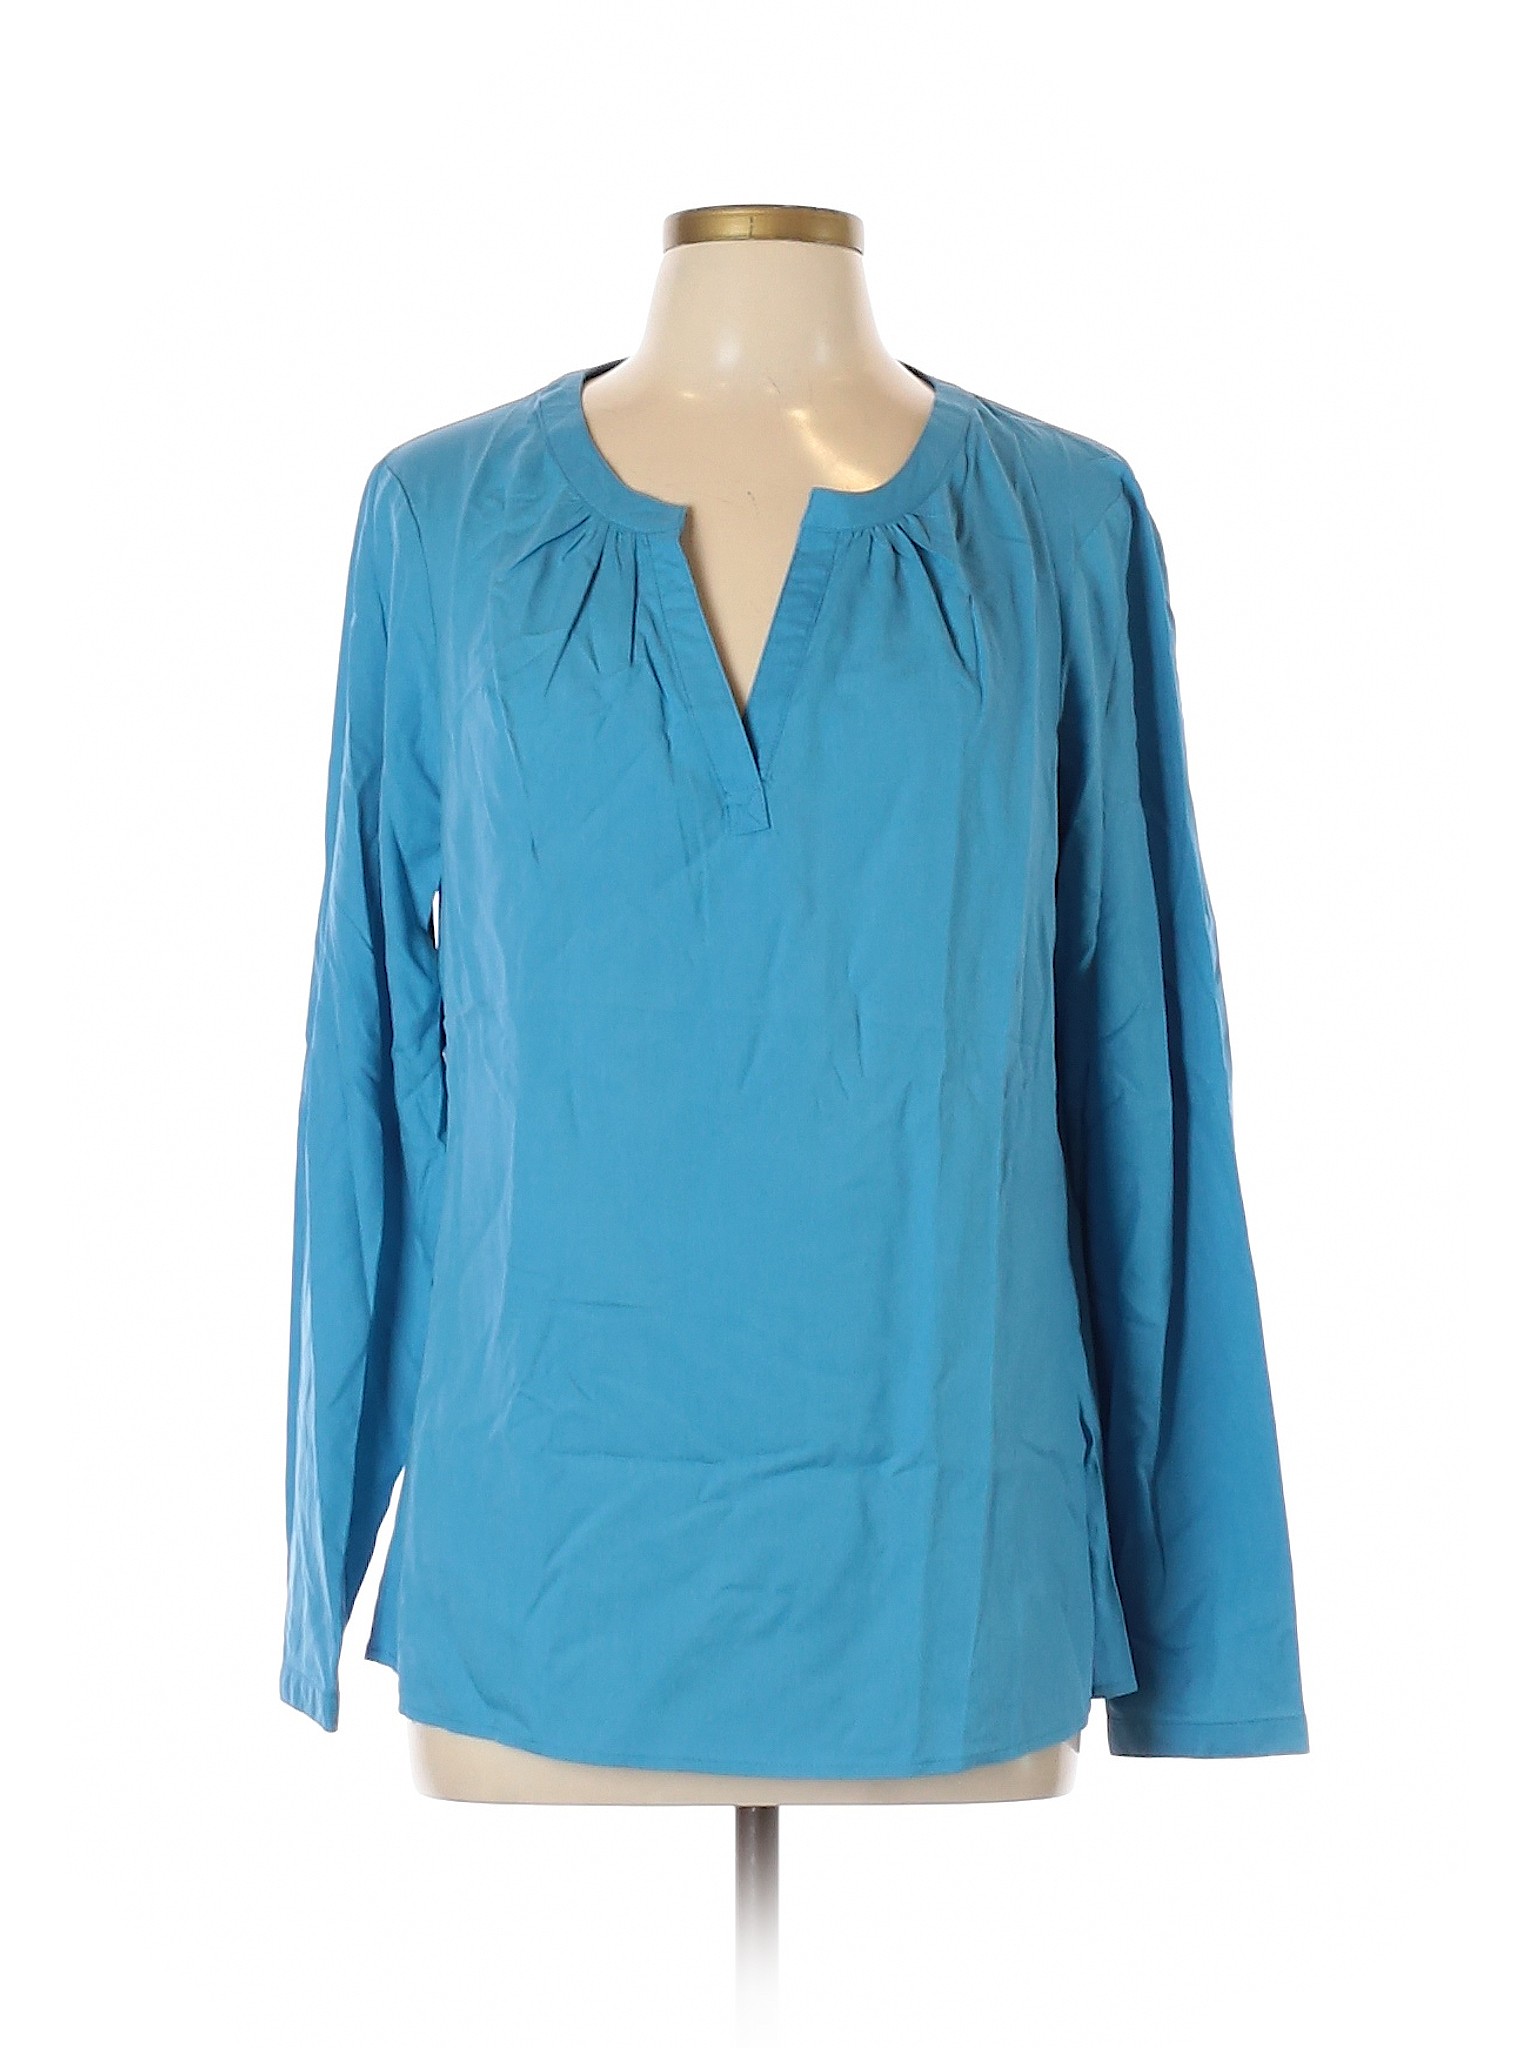 Winter Silks Women Blue Long Sleeve Silk Top L | eBay